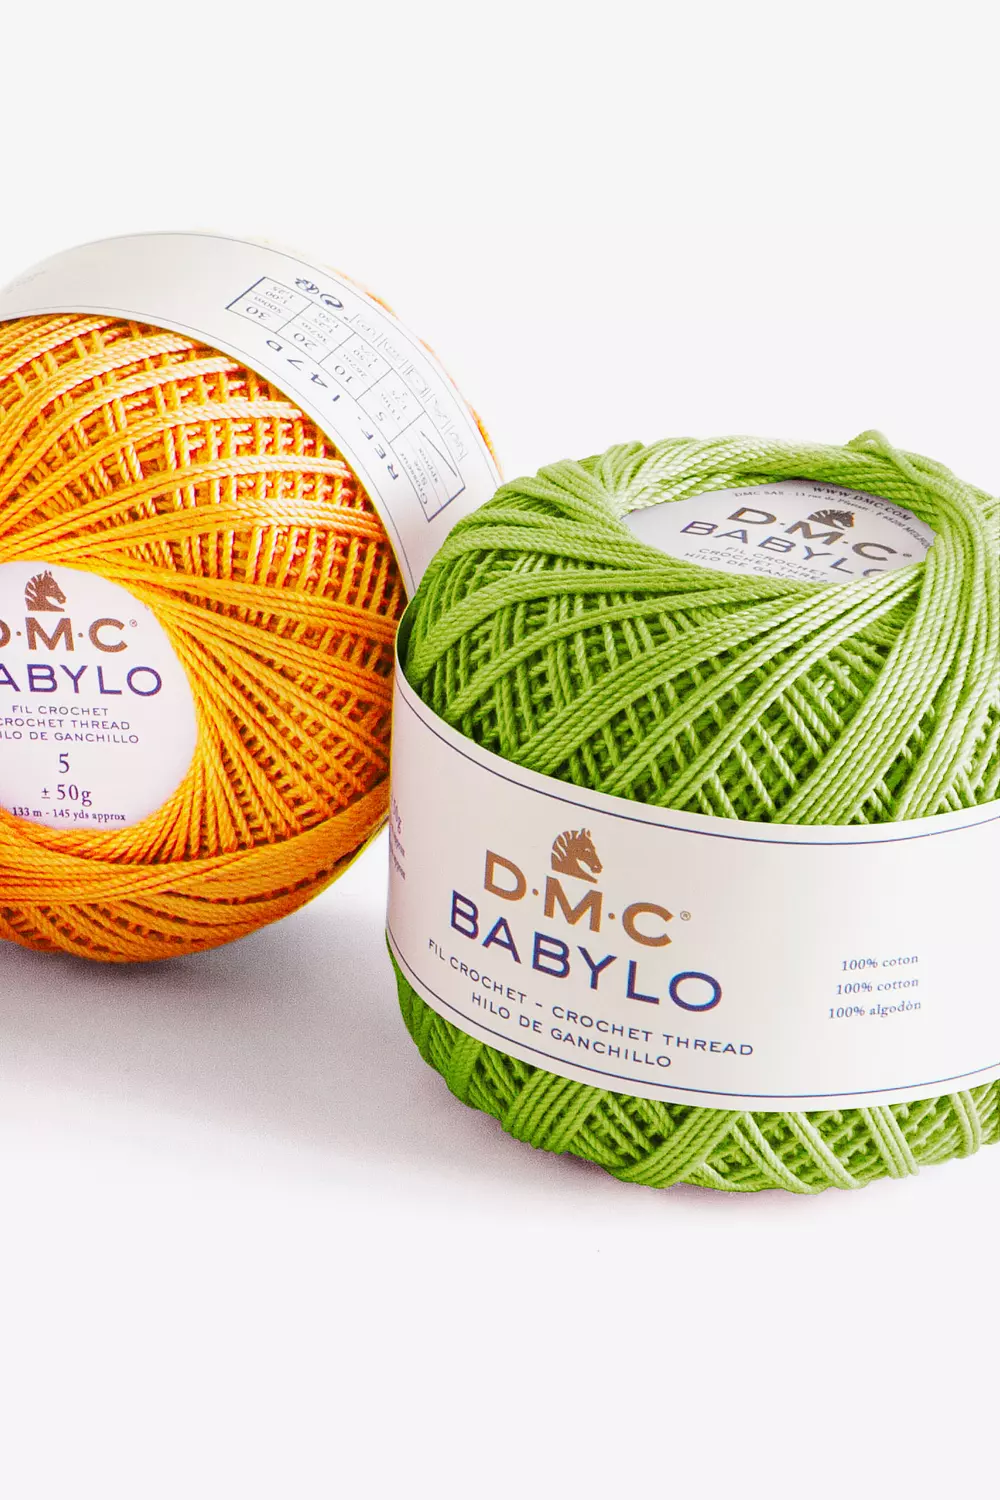 Fil à crocheter Babylo couleurs 50 g - Boutique DMC - DMC